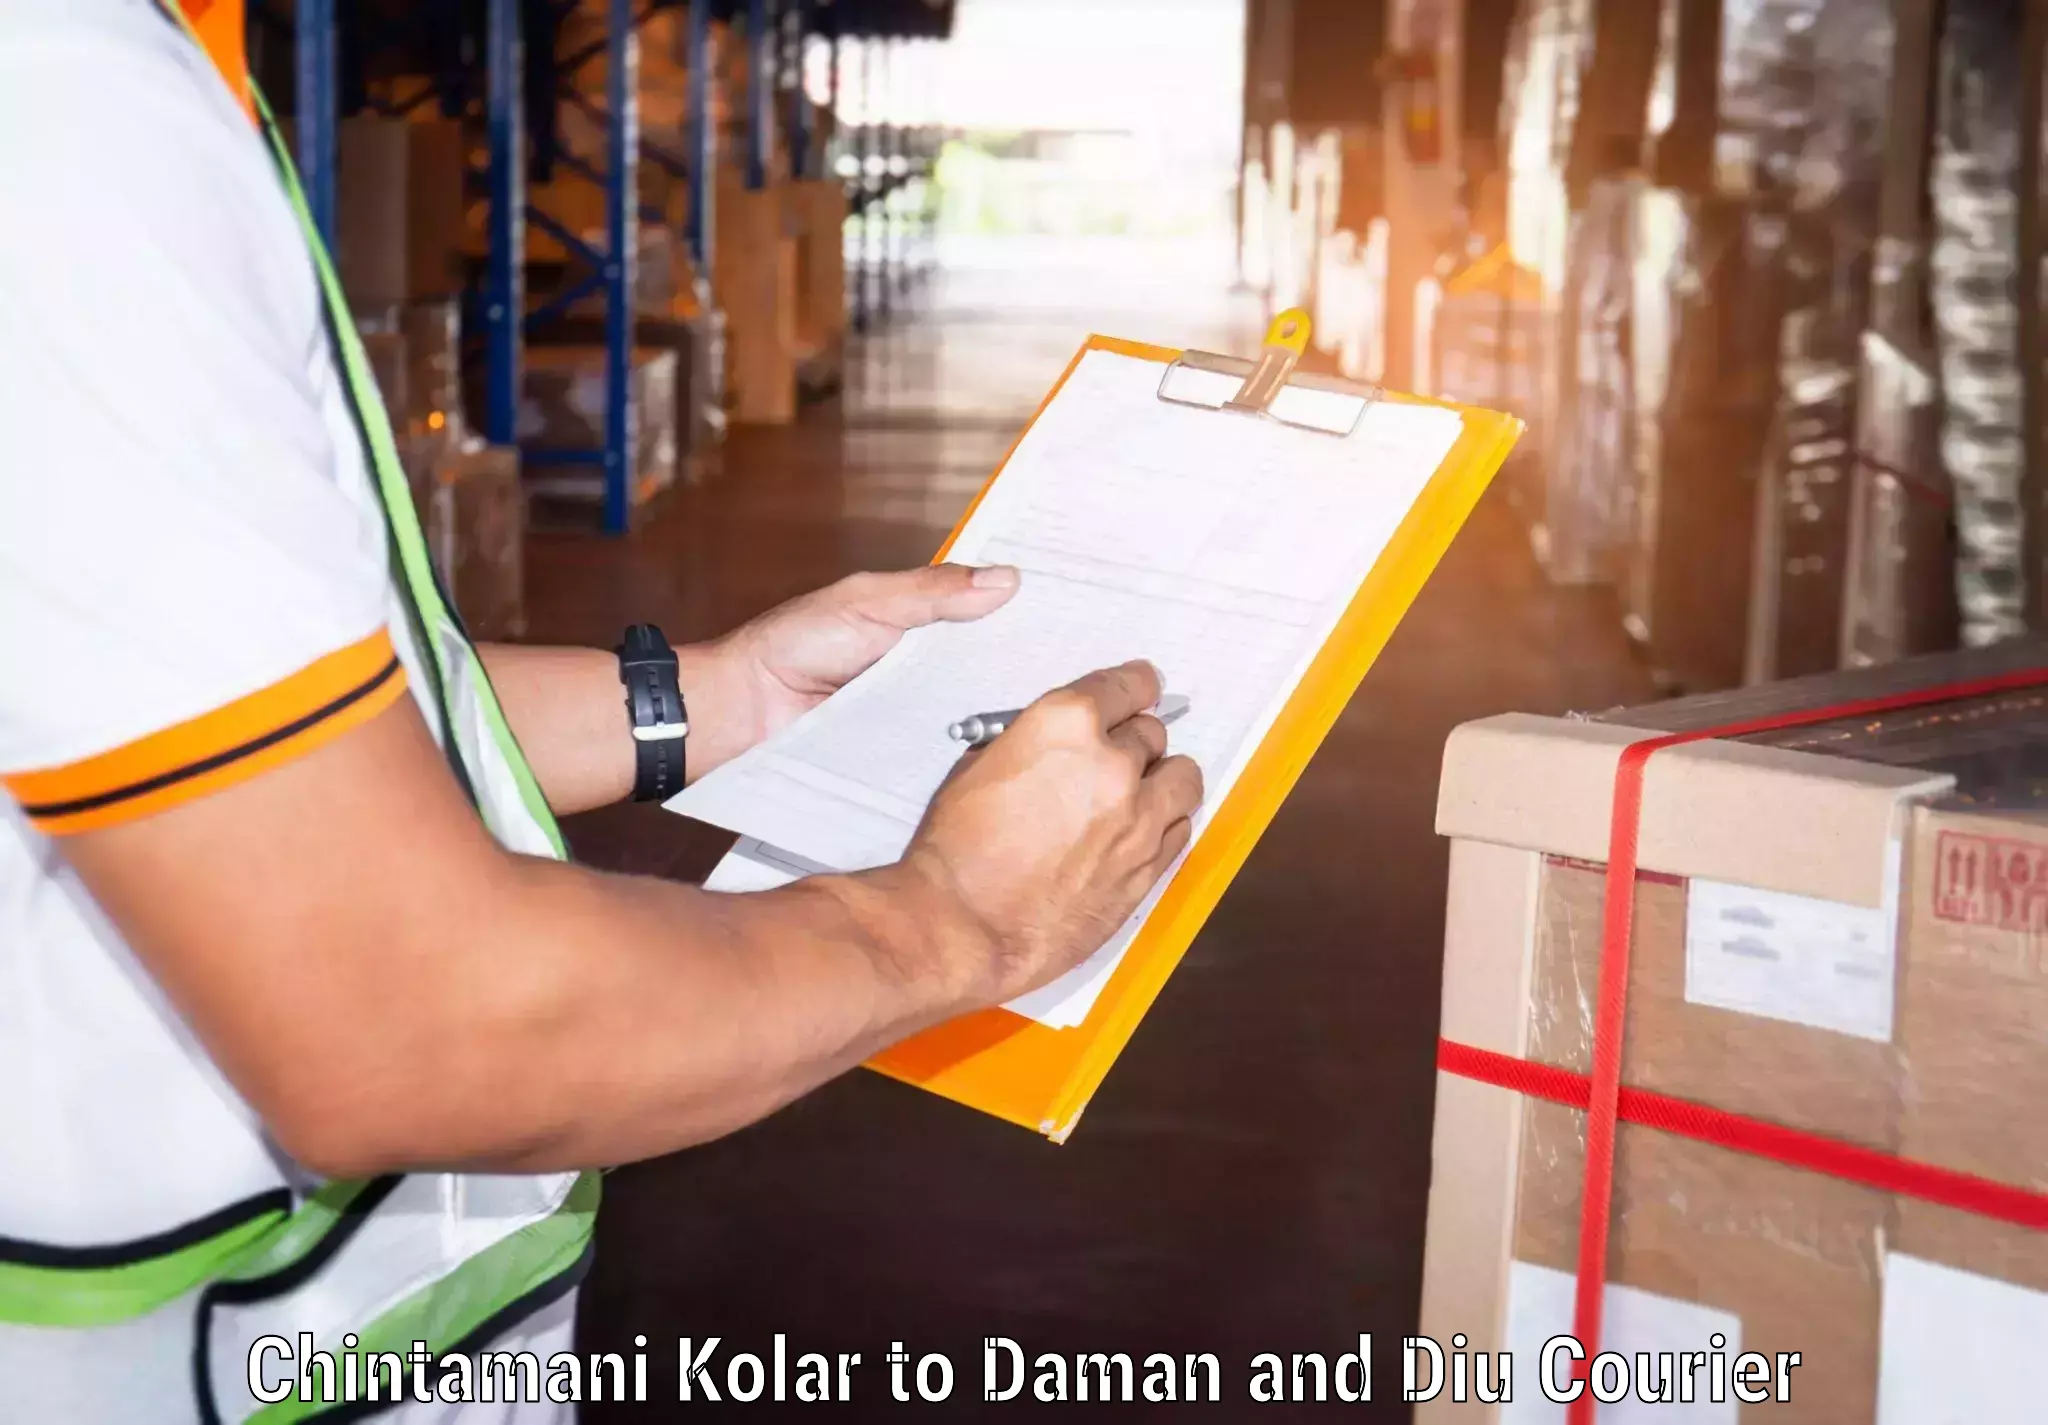 Express package handling Chintamani Kolar to Daman and Diu